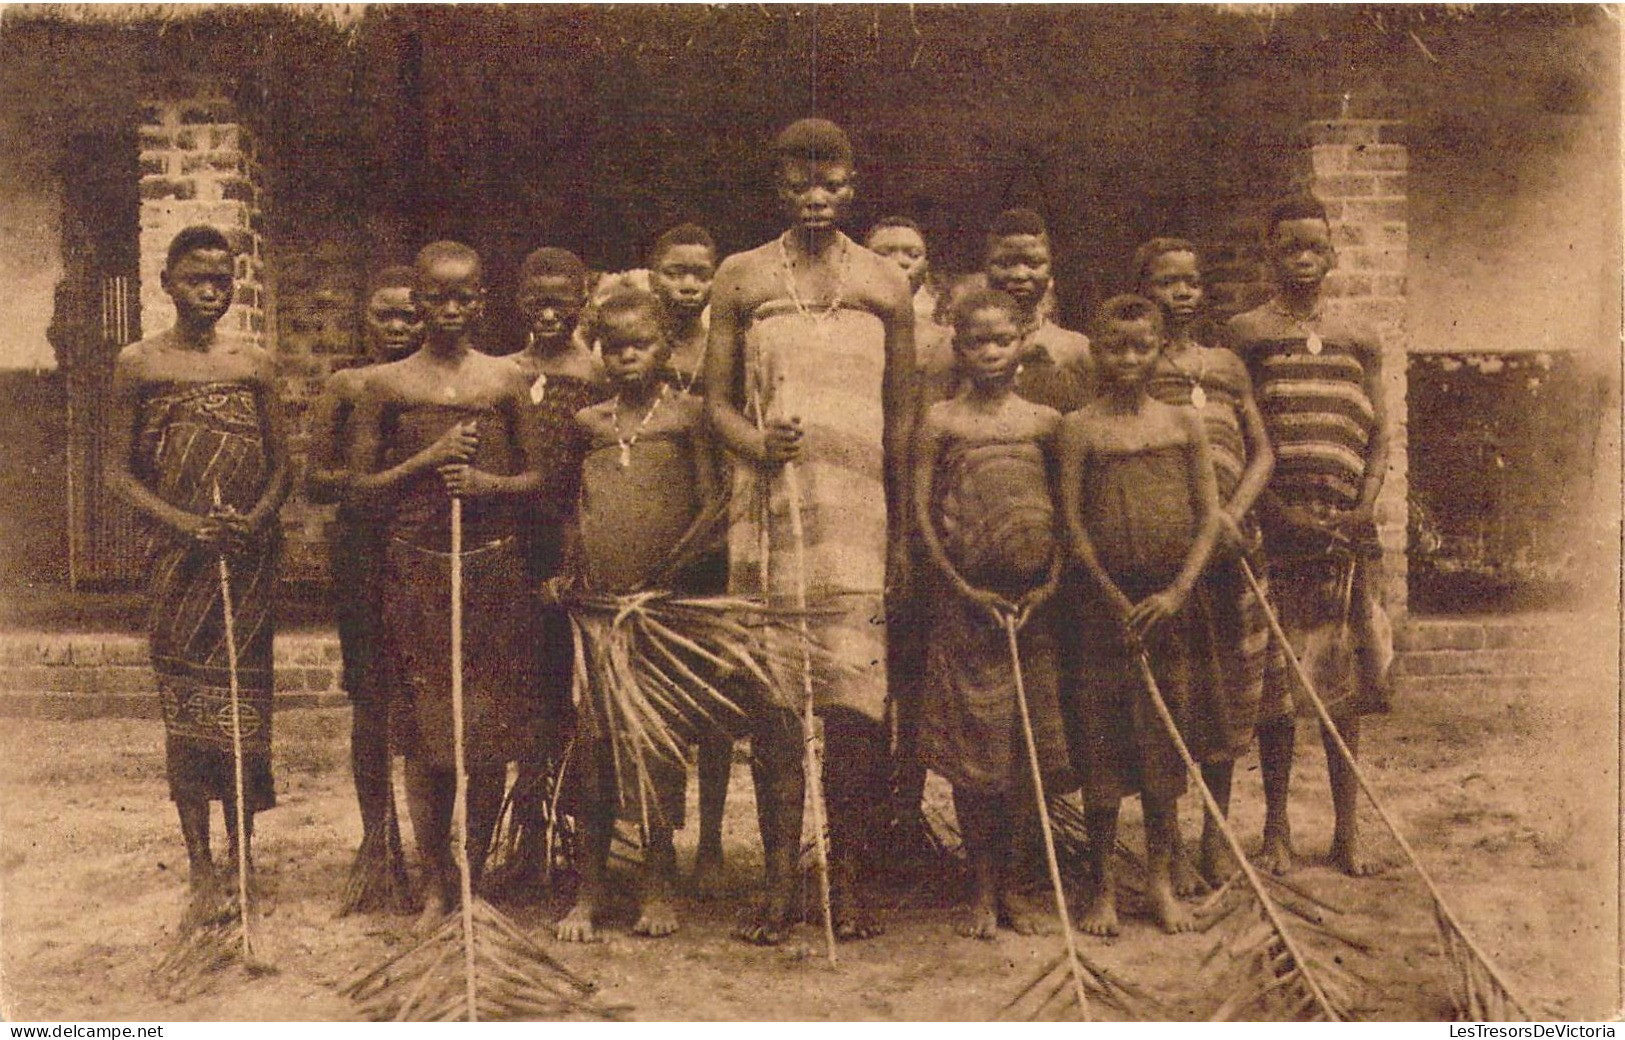 CONGO BELGE - Mission Des Sœurs De Ste-Marie De Namur - Leverville ( Kwango ) - Carte Postale Ancienne - Congo Belga